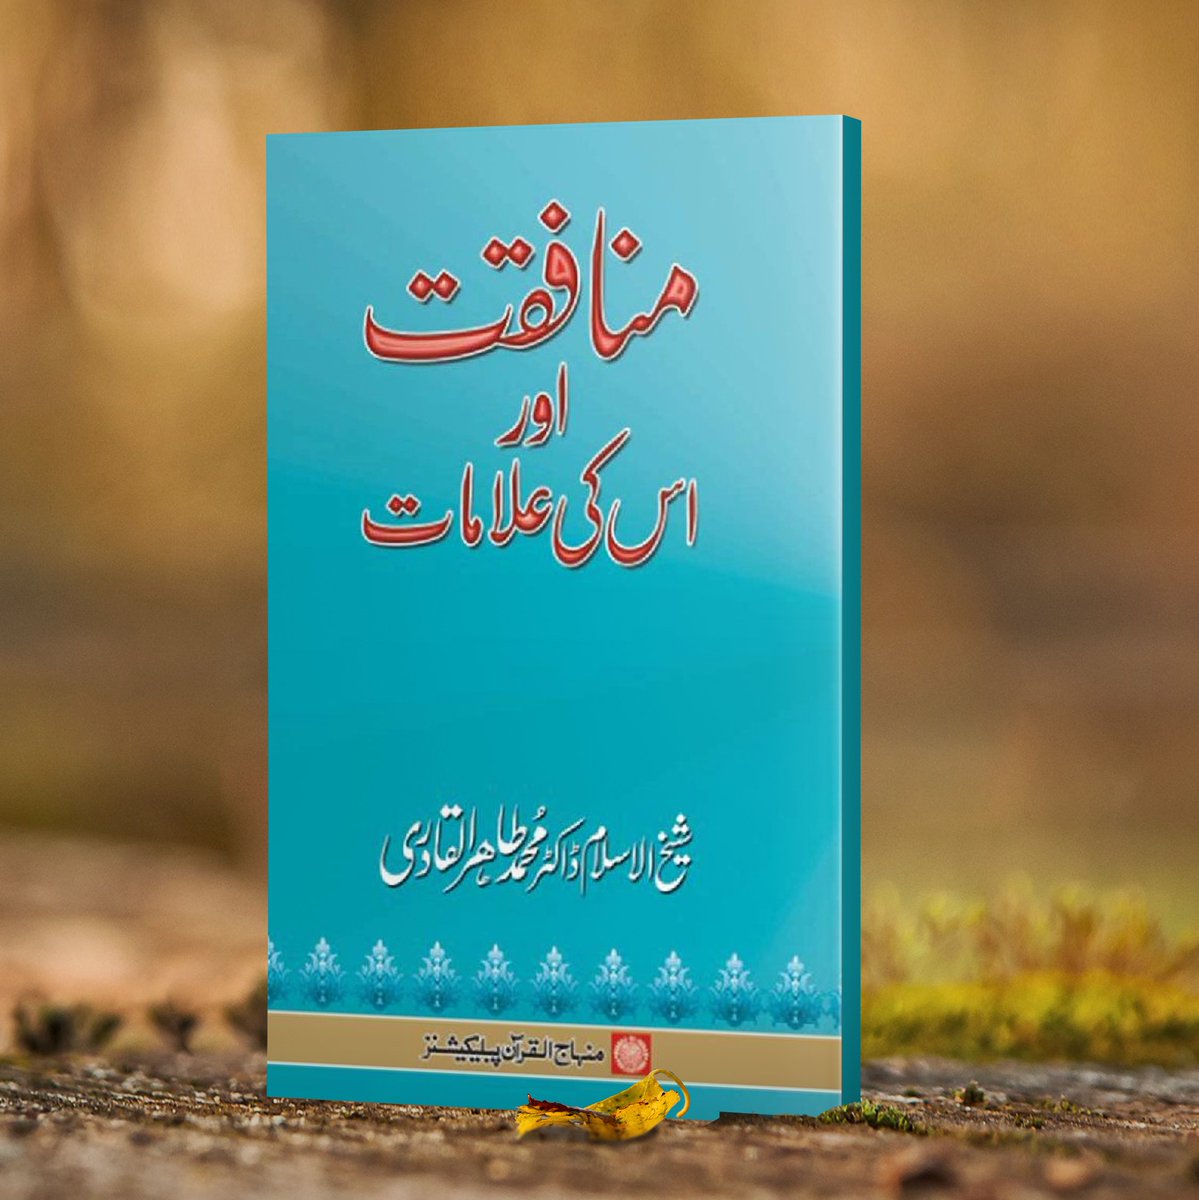 🔰 منافقت اور اس کی علامات

🌐 پڑھیں اور ڈاؤن لوڈ کریں
minhajbooks.com/urdu/book/48/H…

💬 رابطہ خریداری
wa.me/9203097417163

@TahirulQadri #books #islamicbooks #MinhajulQuran #BooksbyDrQadri #DrQadri #IslamicLibrary #UrduBooks #pdfbooks #islamicbookstore